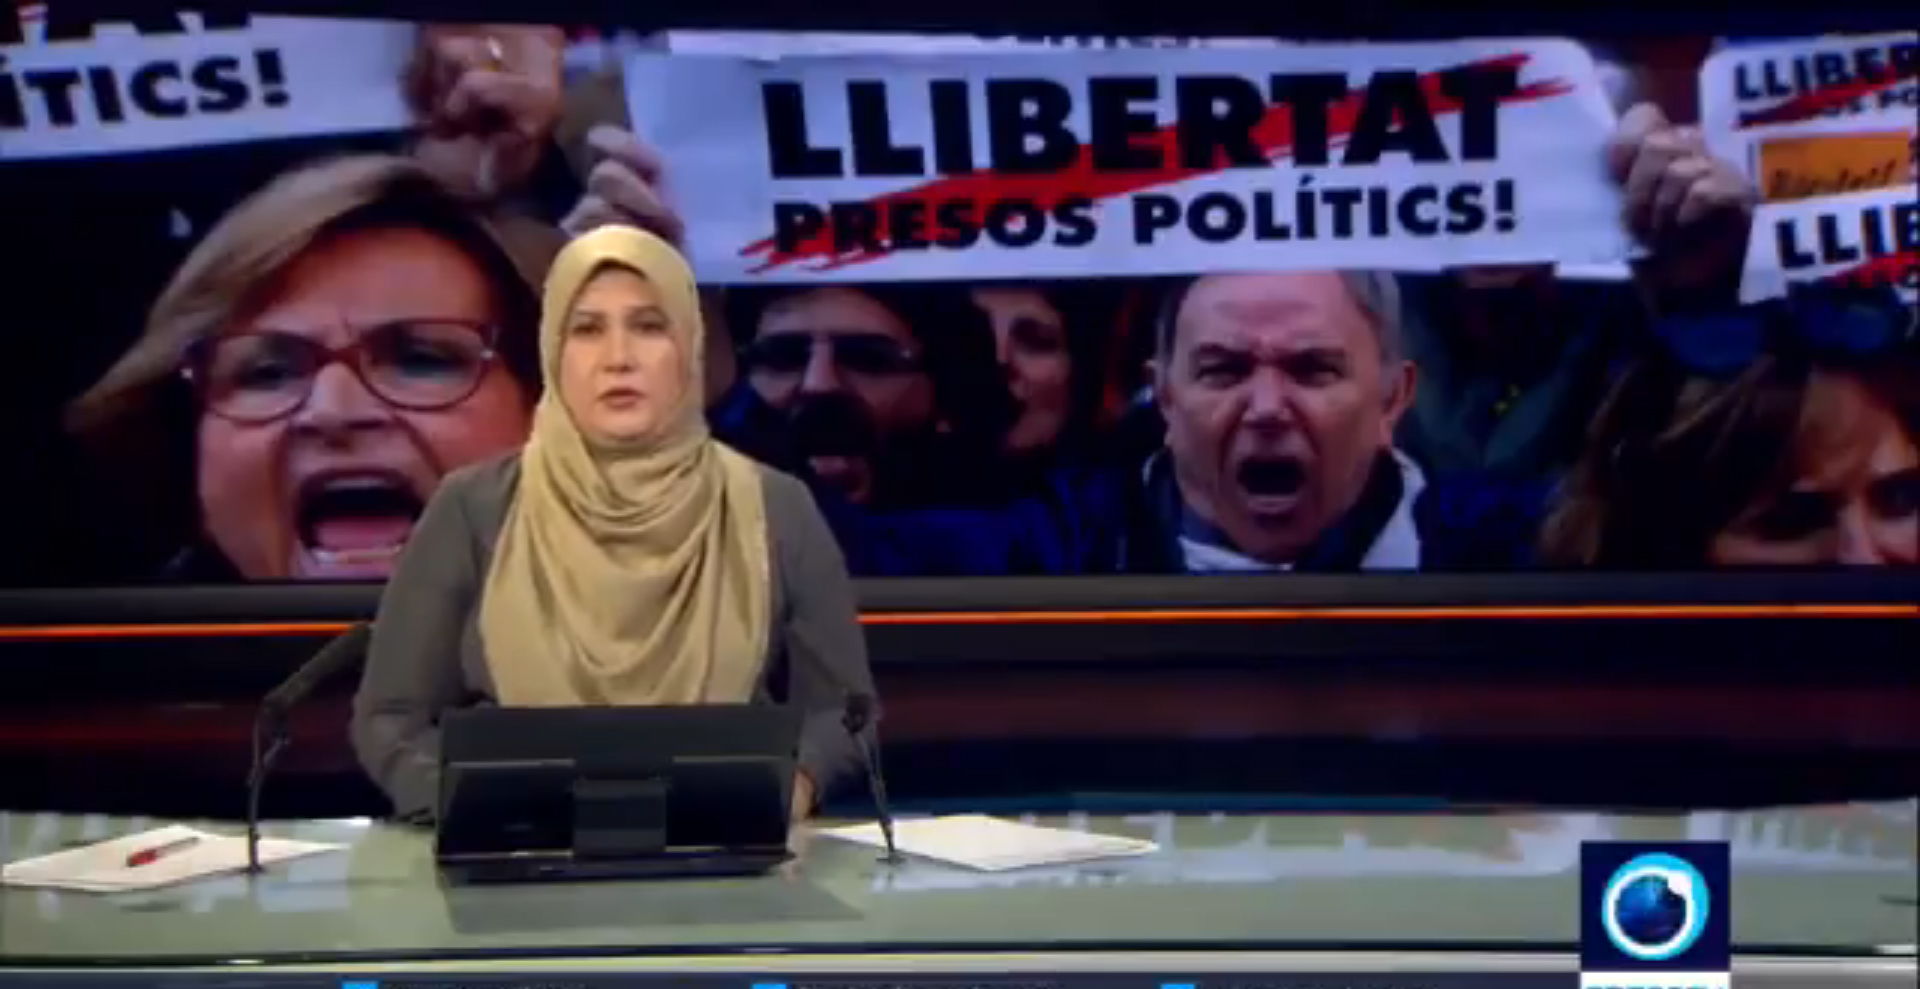 Press TV, televisión con sede en Irán, informa de la manifestación contra los "presos políticos".